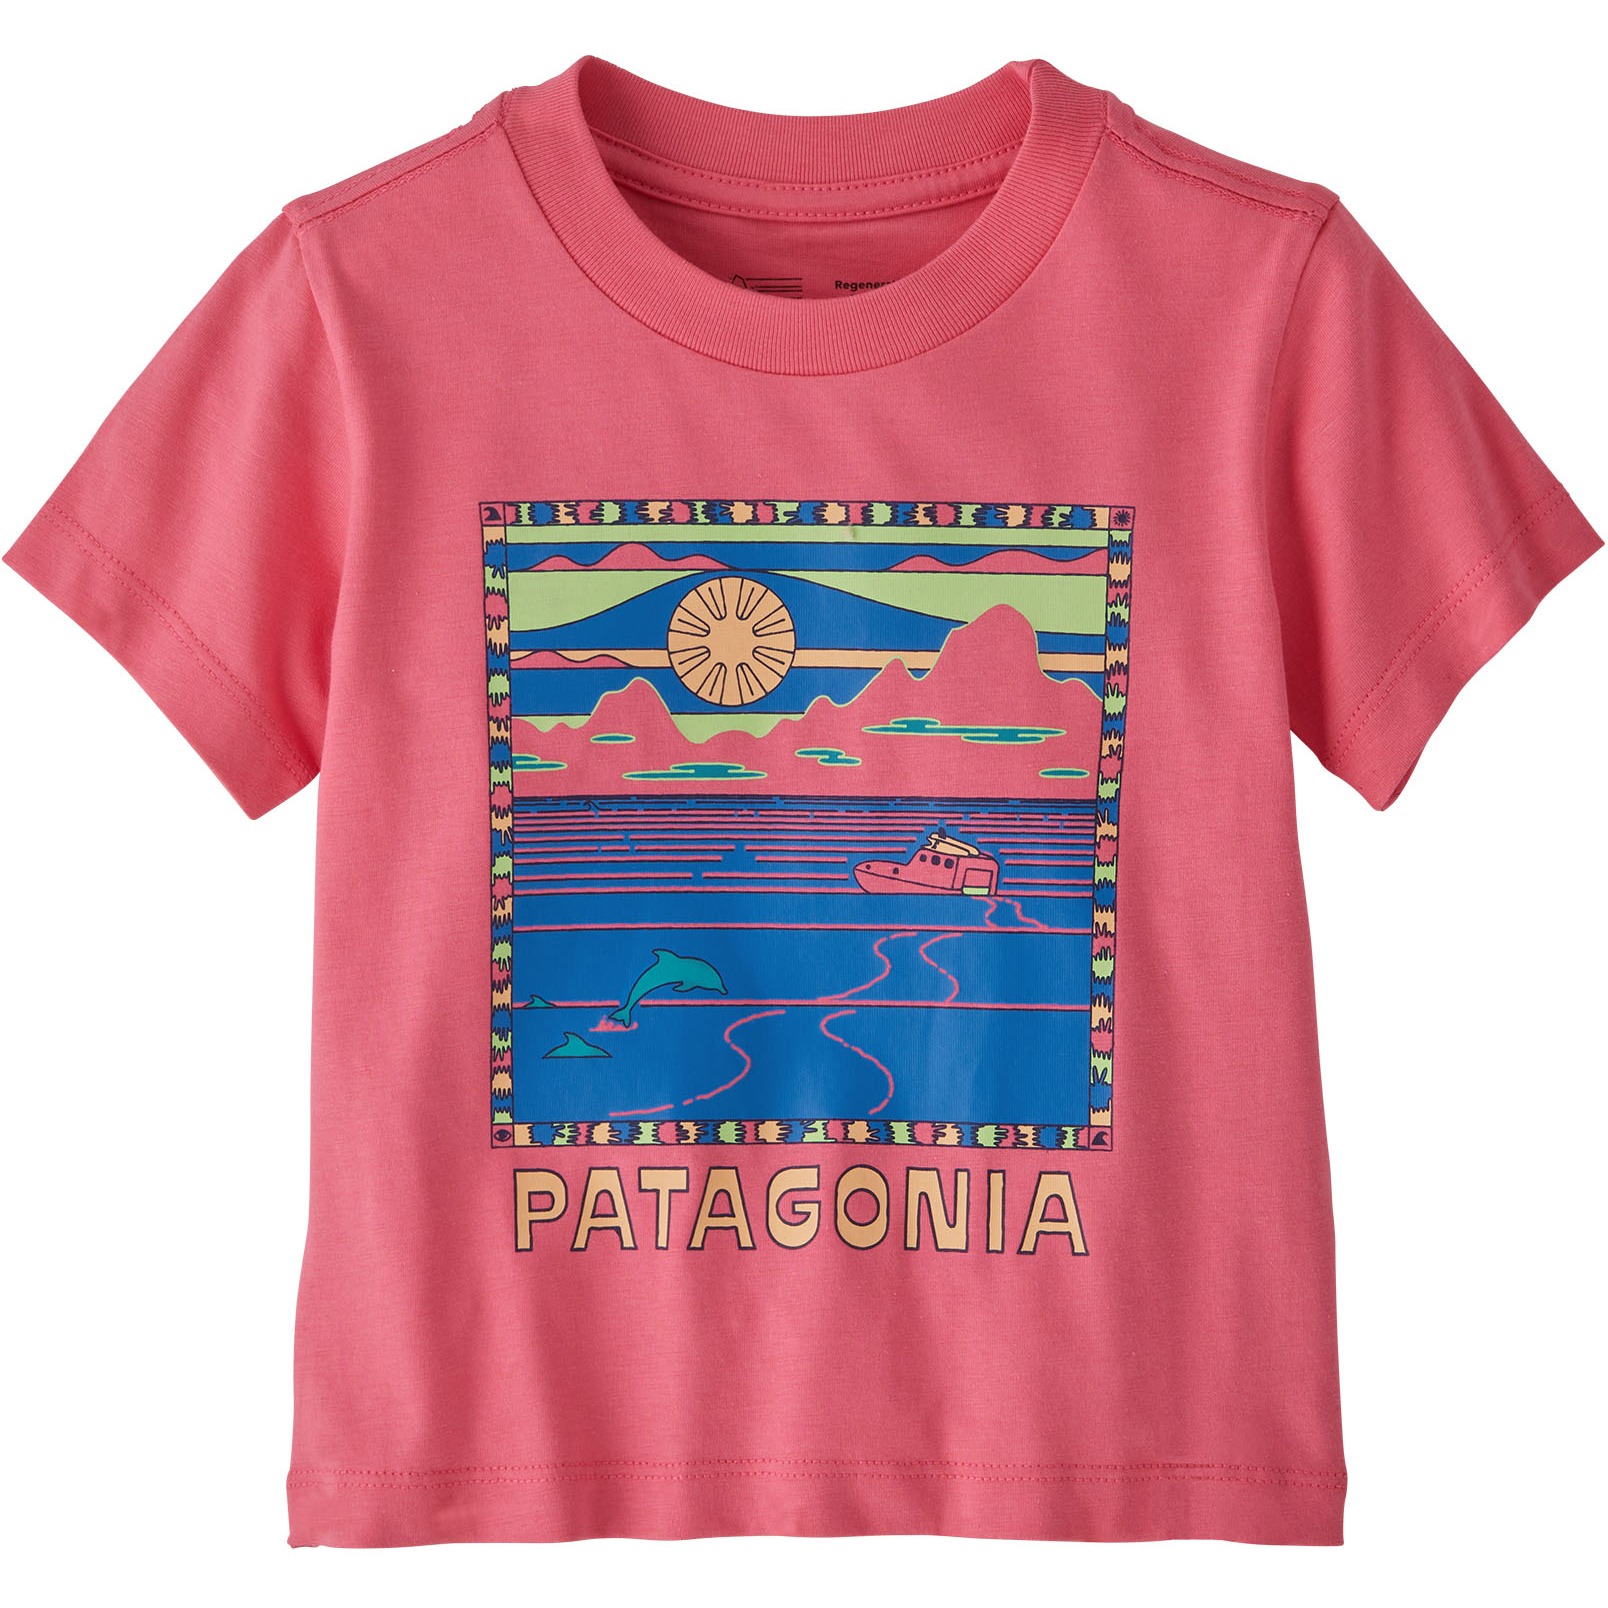 Produktbild von Patagonia Graphic T-Shirt Baby - Summit Swell: Afternoon Pink